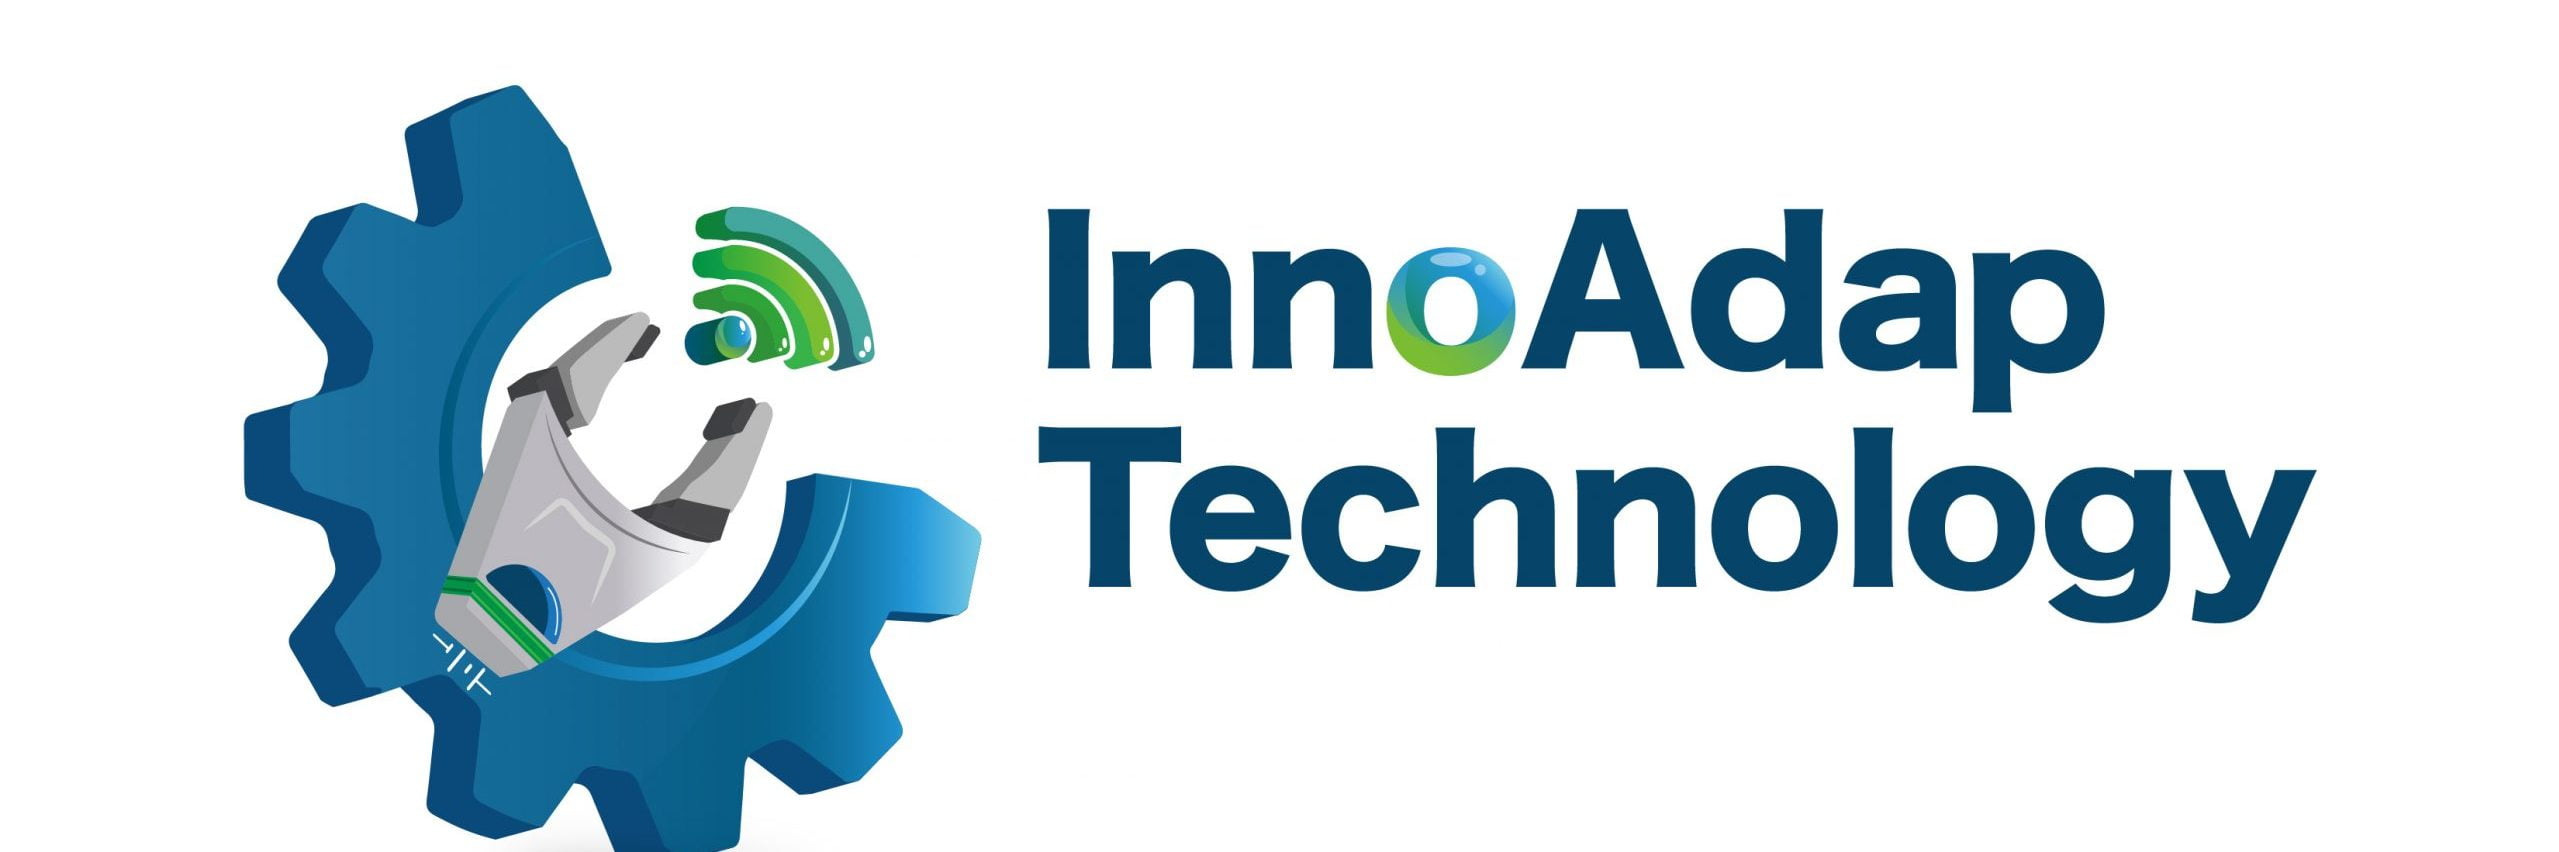 InnoAdap Technology